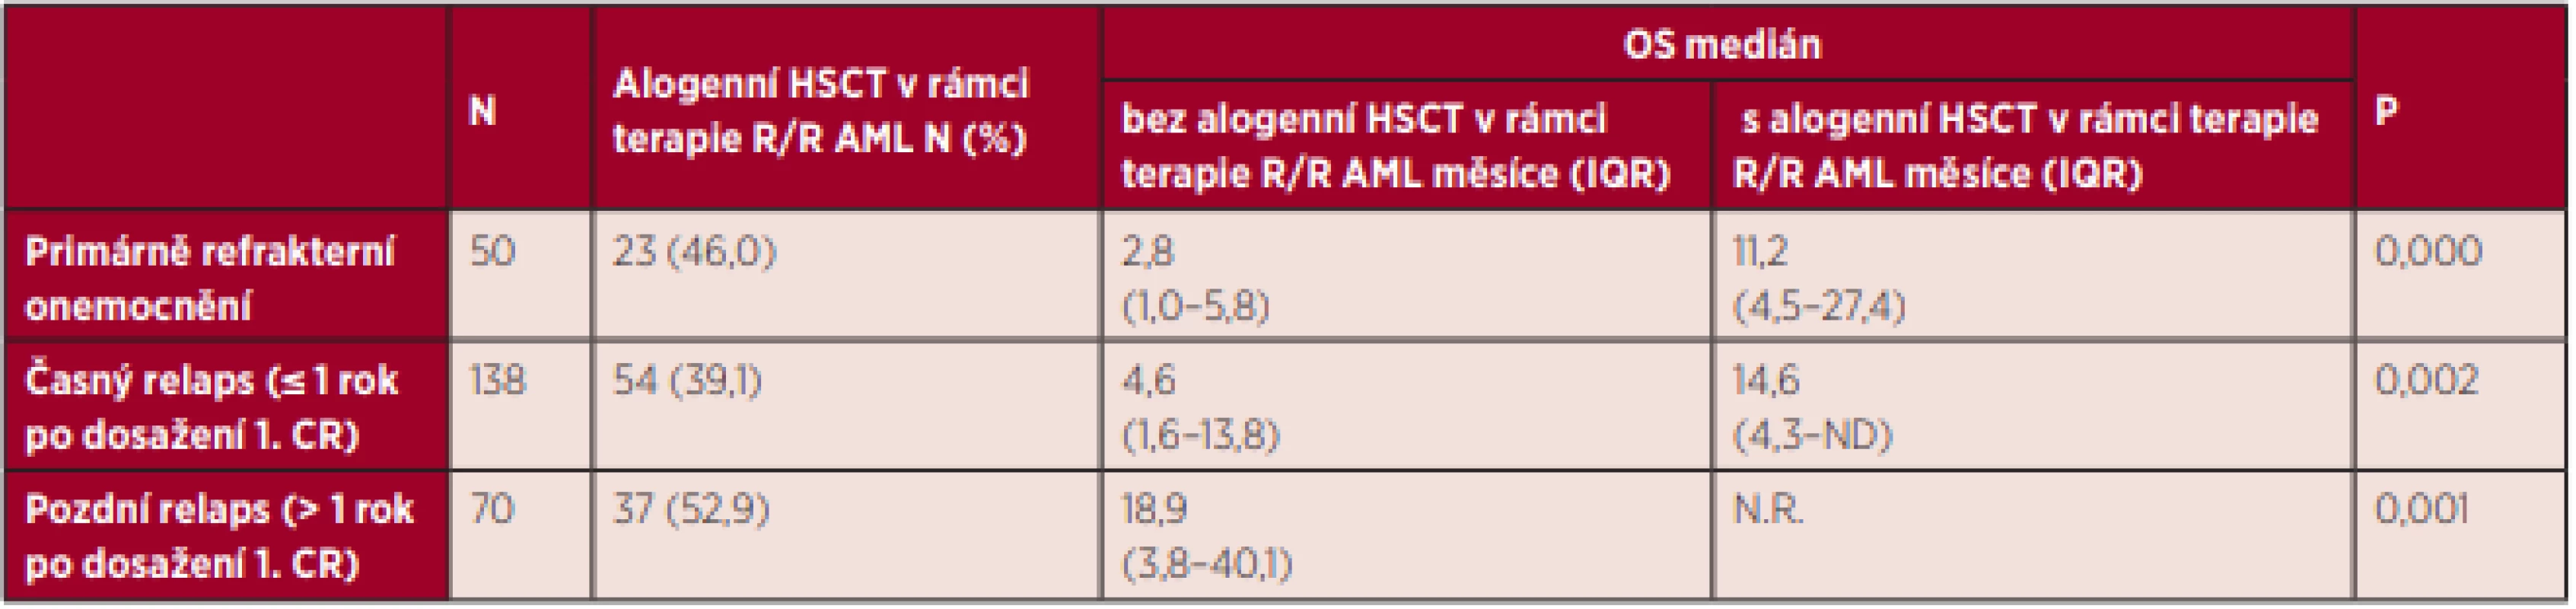 Celkové přežití nemocných s AML (mimo APL) s primárně refrakterním onemocněním a relapsem onemocnění v závislosti na provedení
alogenní HSCT v rámci terapie relapsu